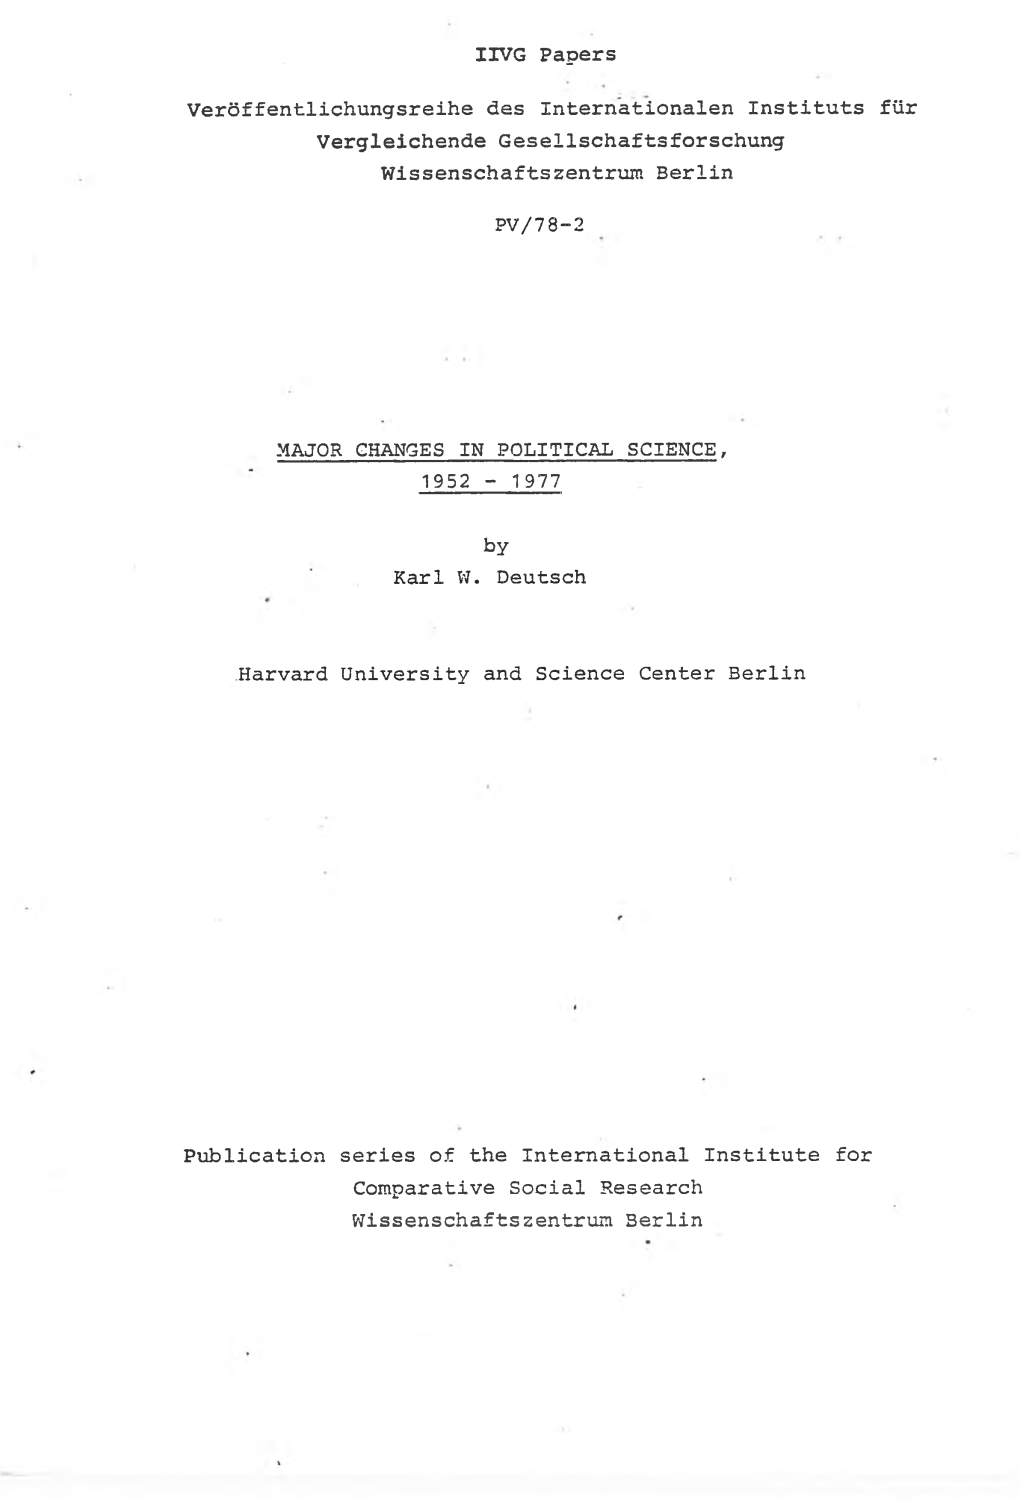 IIVG Papers Veröffentlichungsreihe Des Internationalen Instituts Für